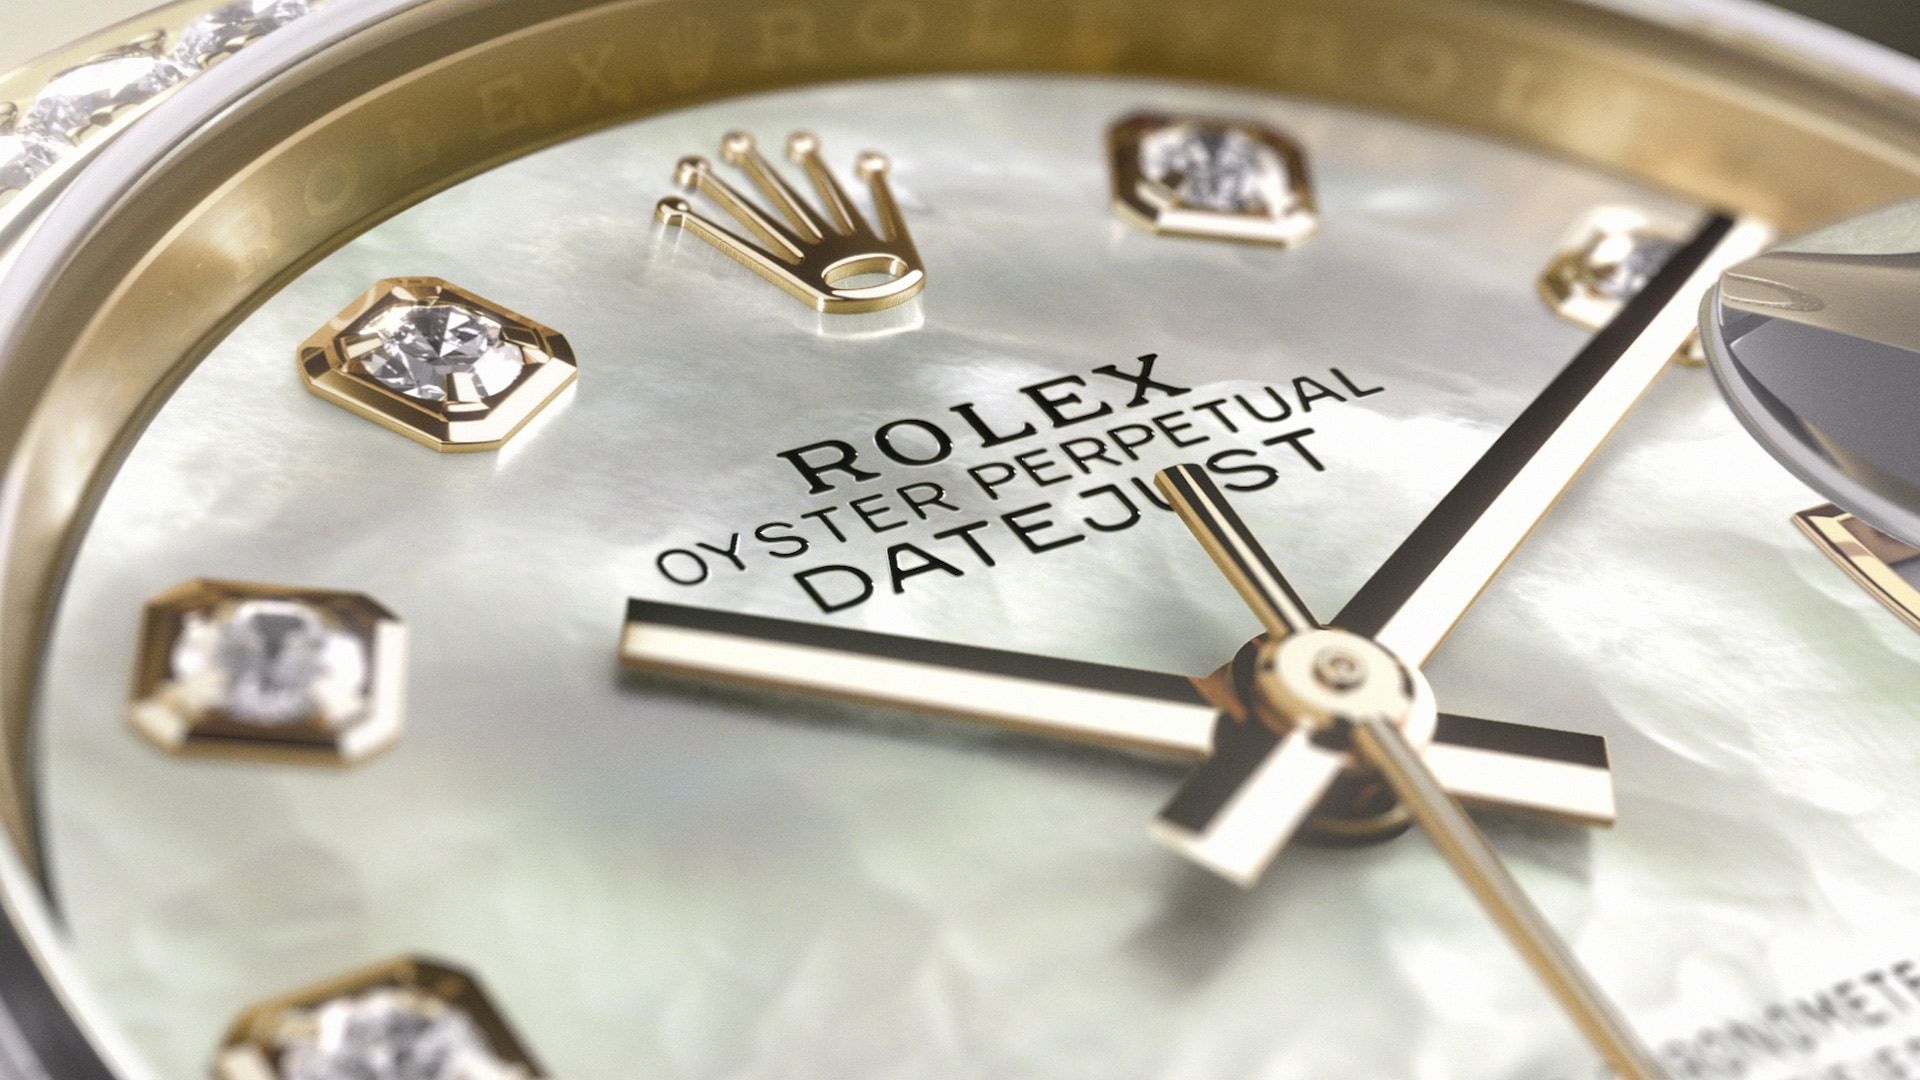 Suiza lideró las exportaciones de relojes en el mundo en 2021, al sumar 15,005 millones de dólares. Switzerland led the world in watch exports in 2021, totaling $15,005 million.